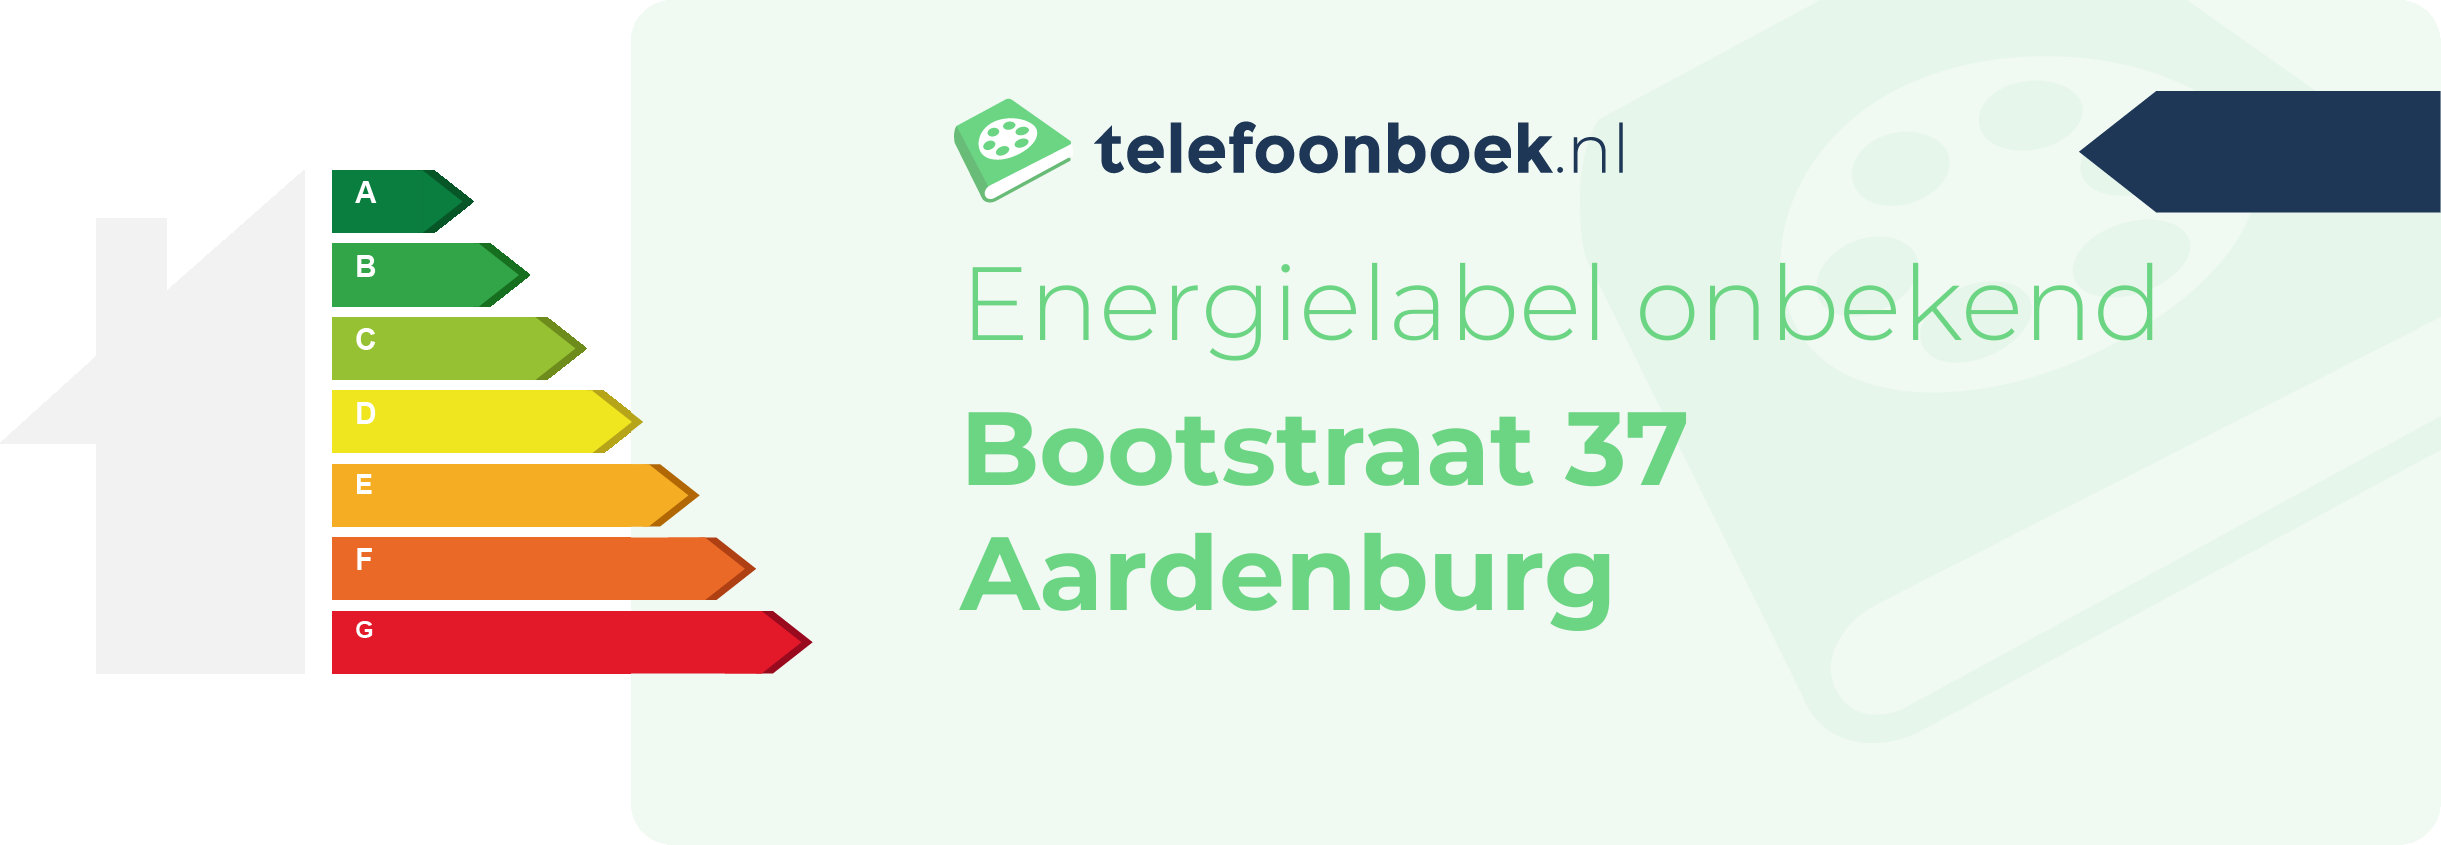 Energielabel Bootstraat 37 Aardenburg